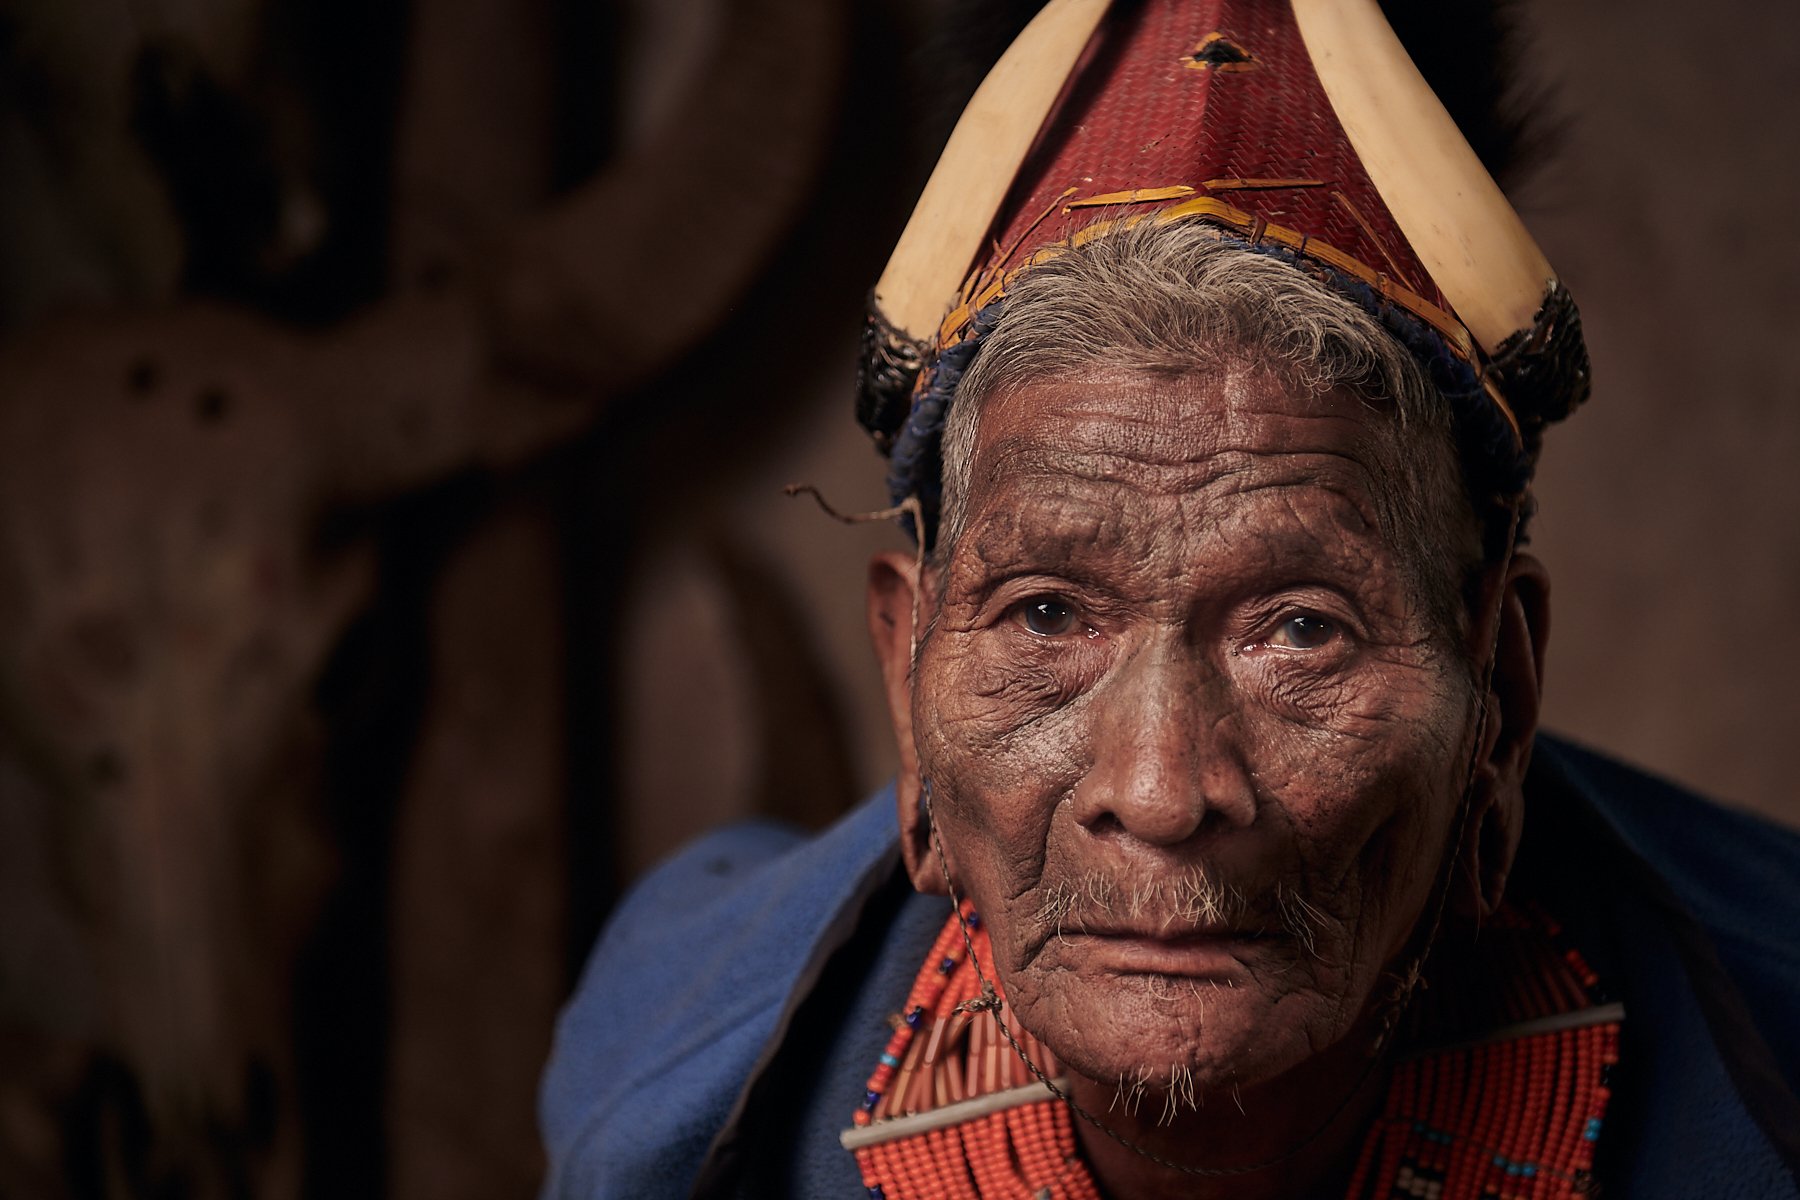 Konyak headhunter, Nagaland